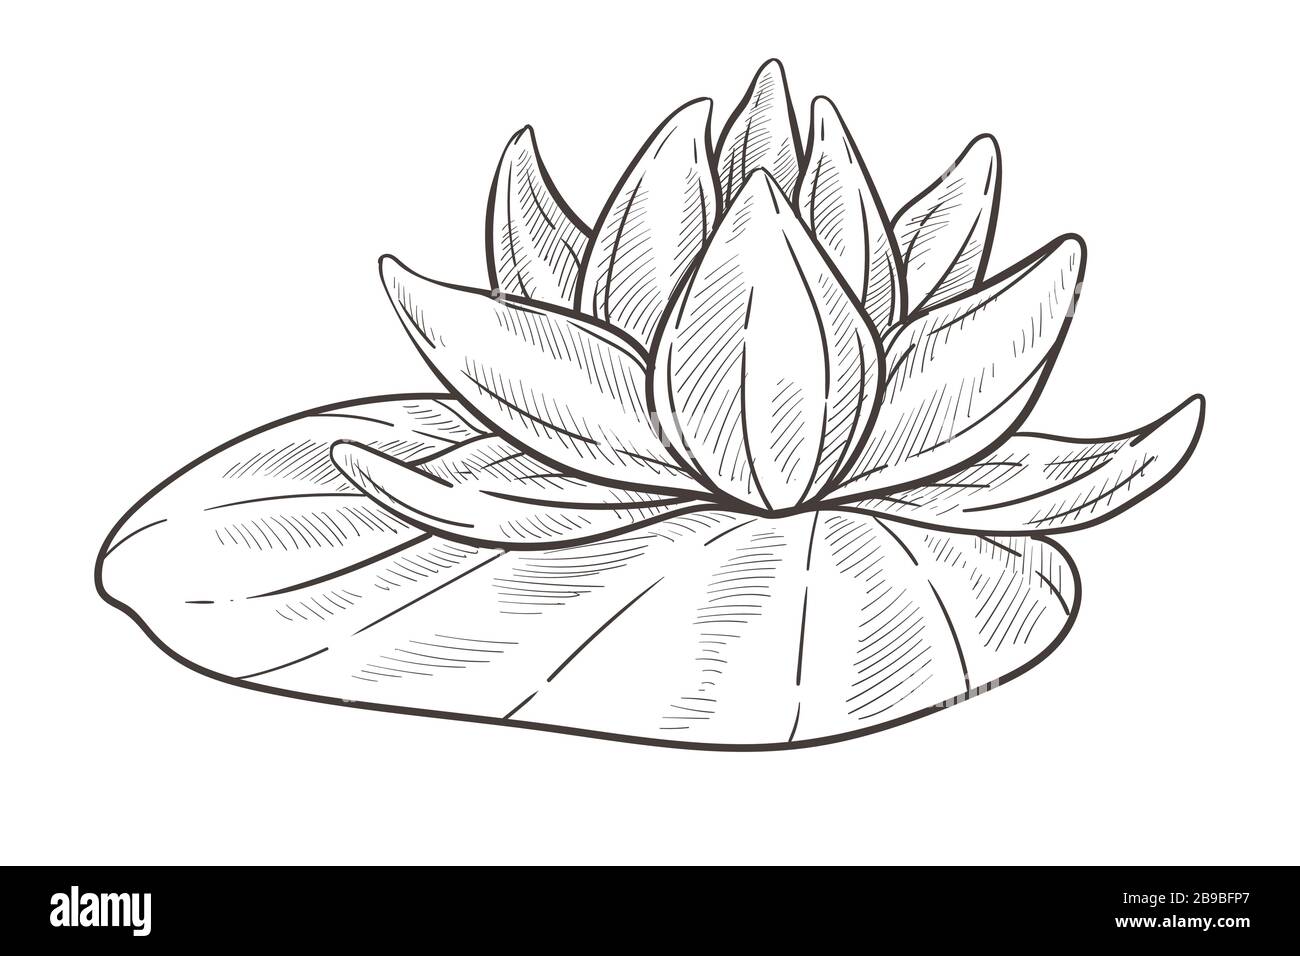 Esquisse isolée de fleur d'eau, bourgeon de lotus avec feuille Illustration de Vecteur